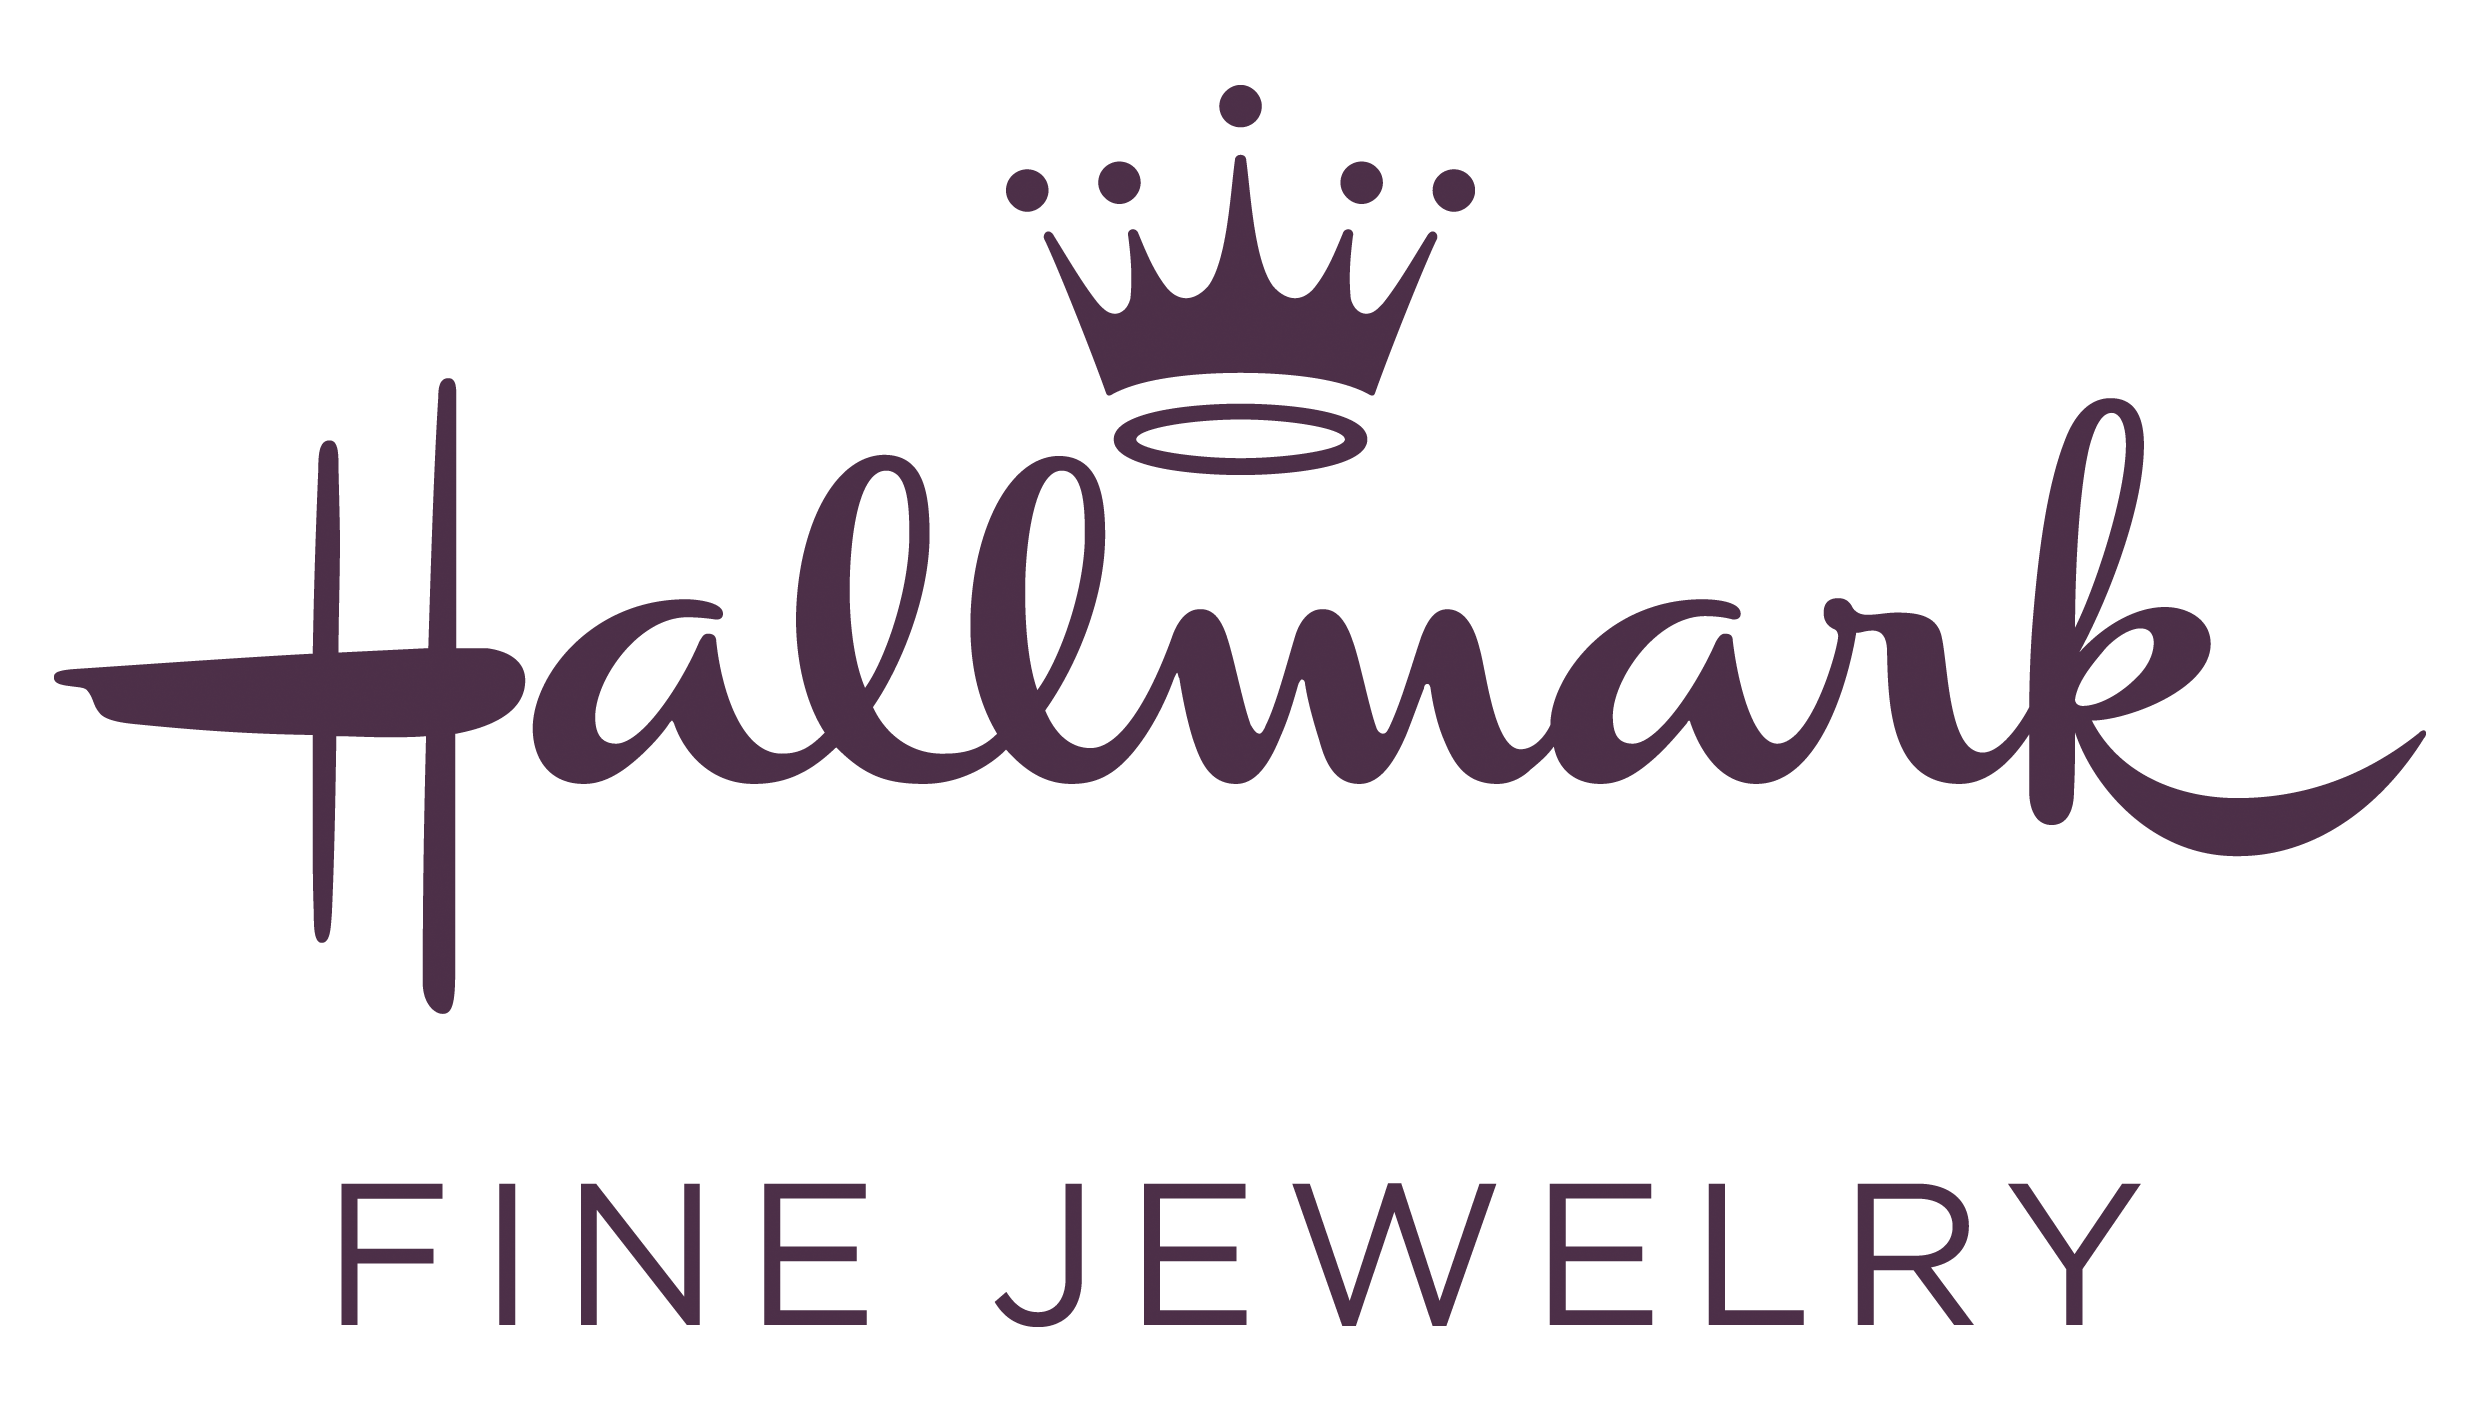  Hallmark Fine Jewelry